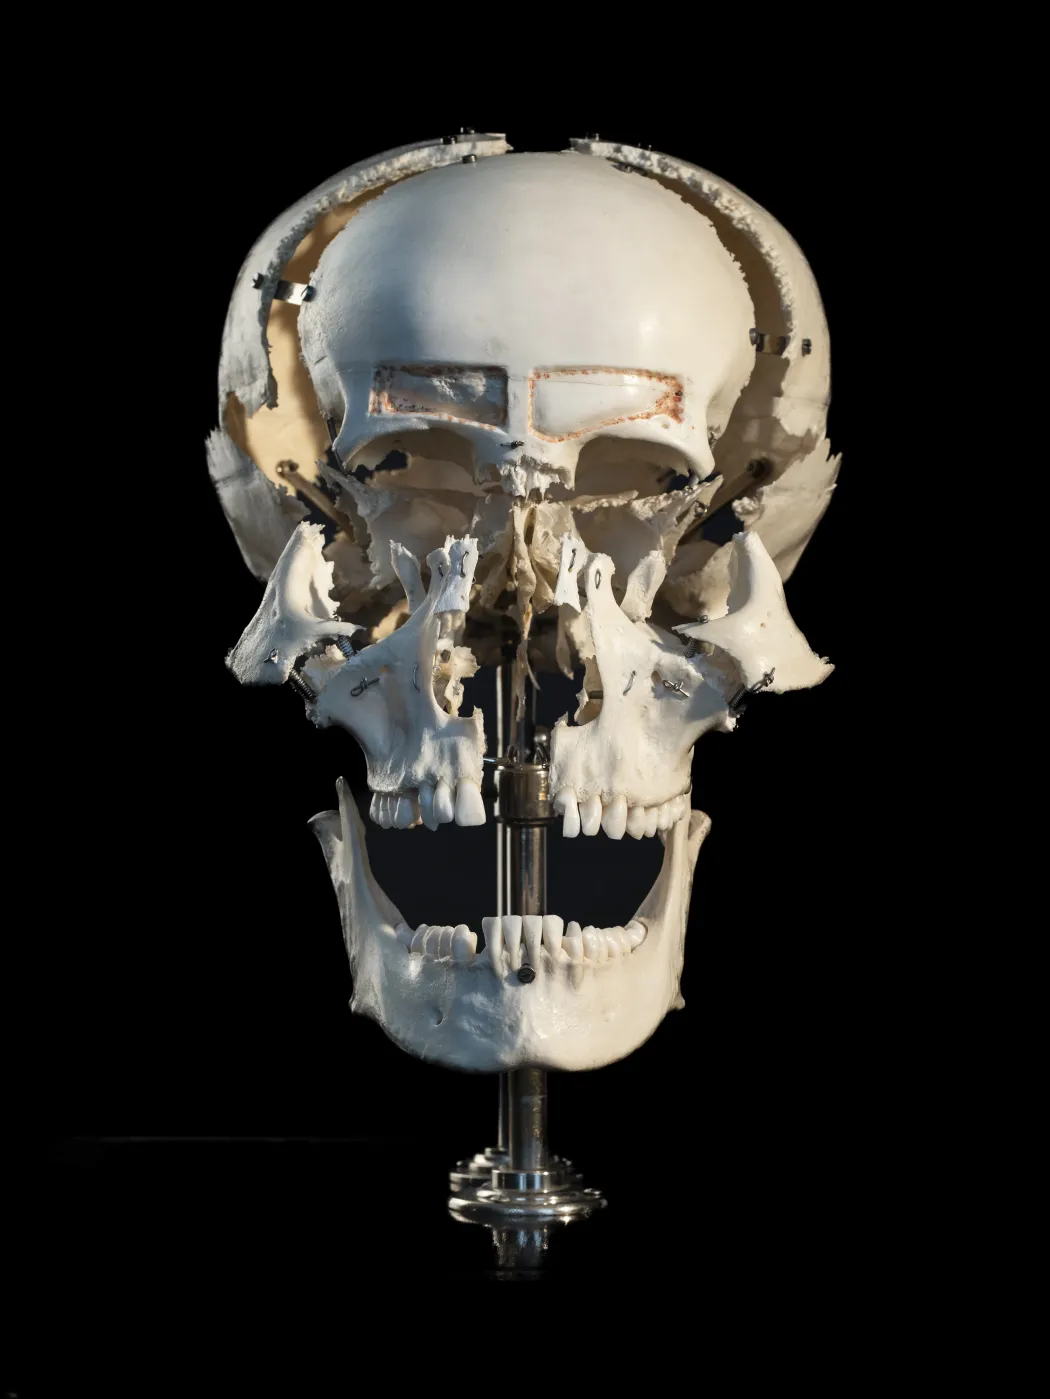 „Robbantott” koponya (másként francia koponya) a koponyát alkotó csontok bemutatására. A csontokat összetartó úgynevezett varratokat speciális eljárással feloldották